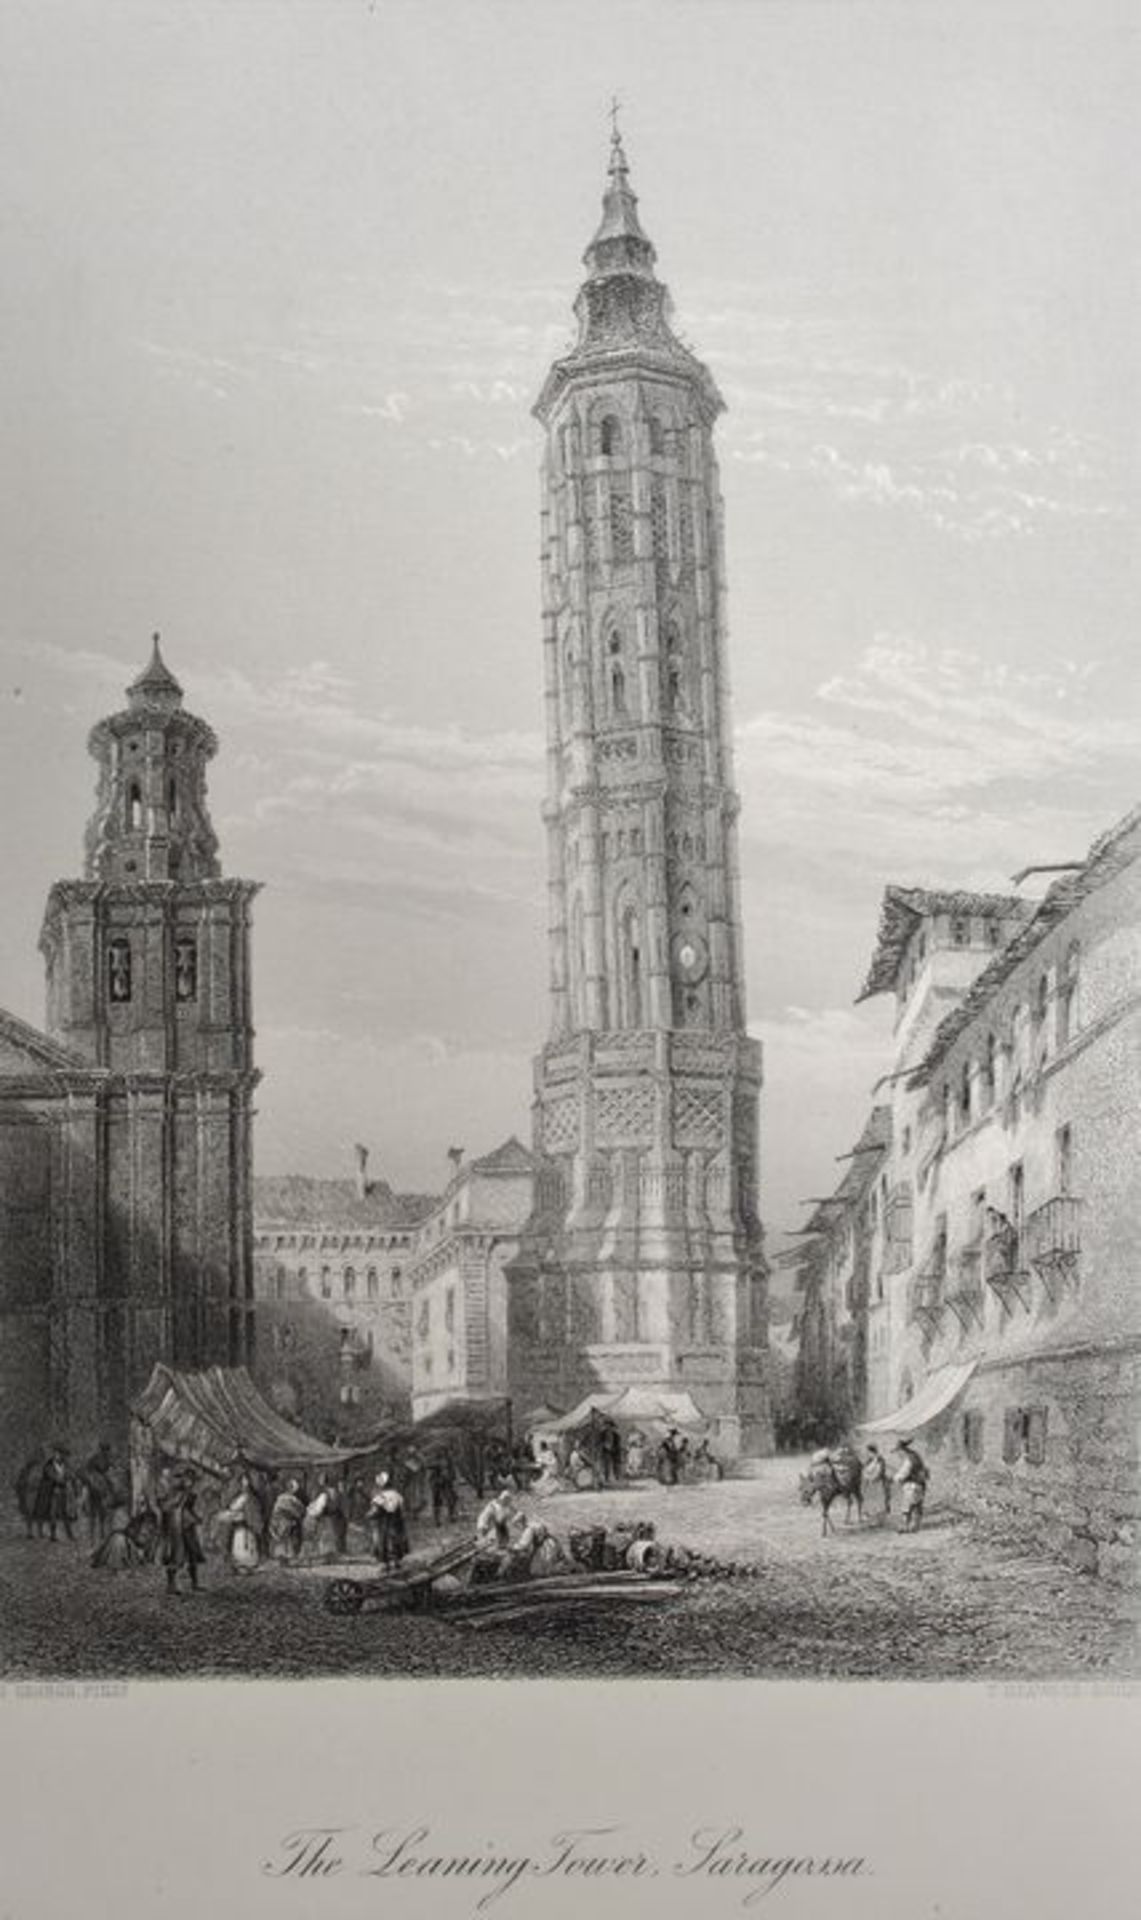 Saragossa. Zwei Darstellungen des Turms. a) "The leaning Tower, Saragossa". Stahlstich von George/